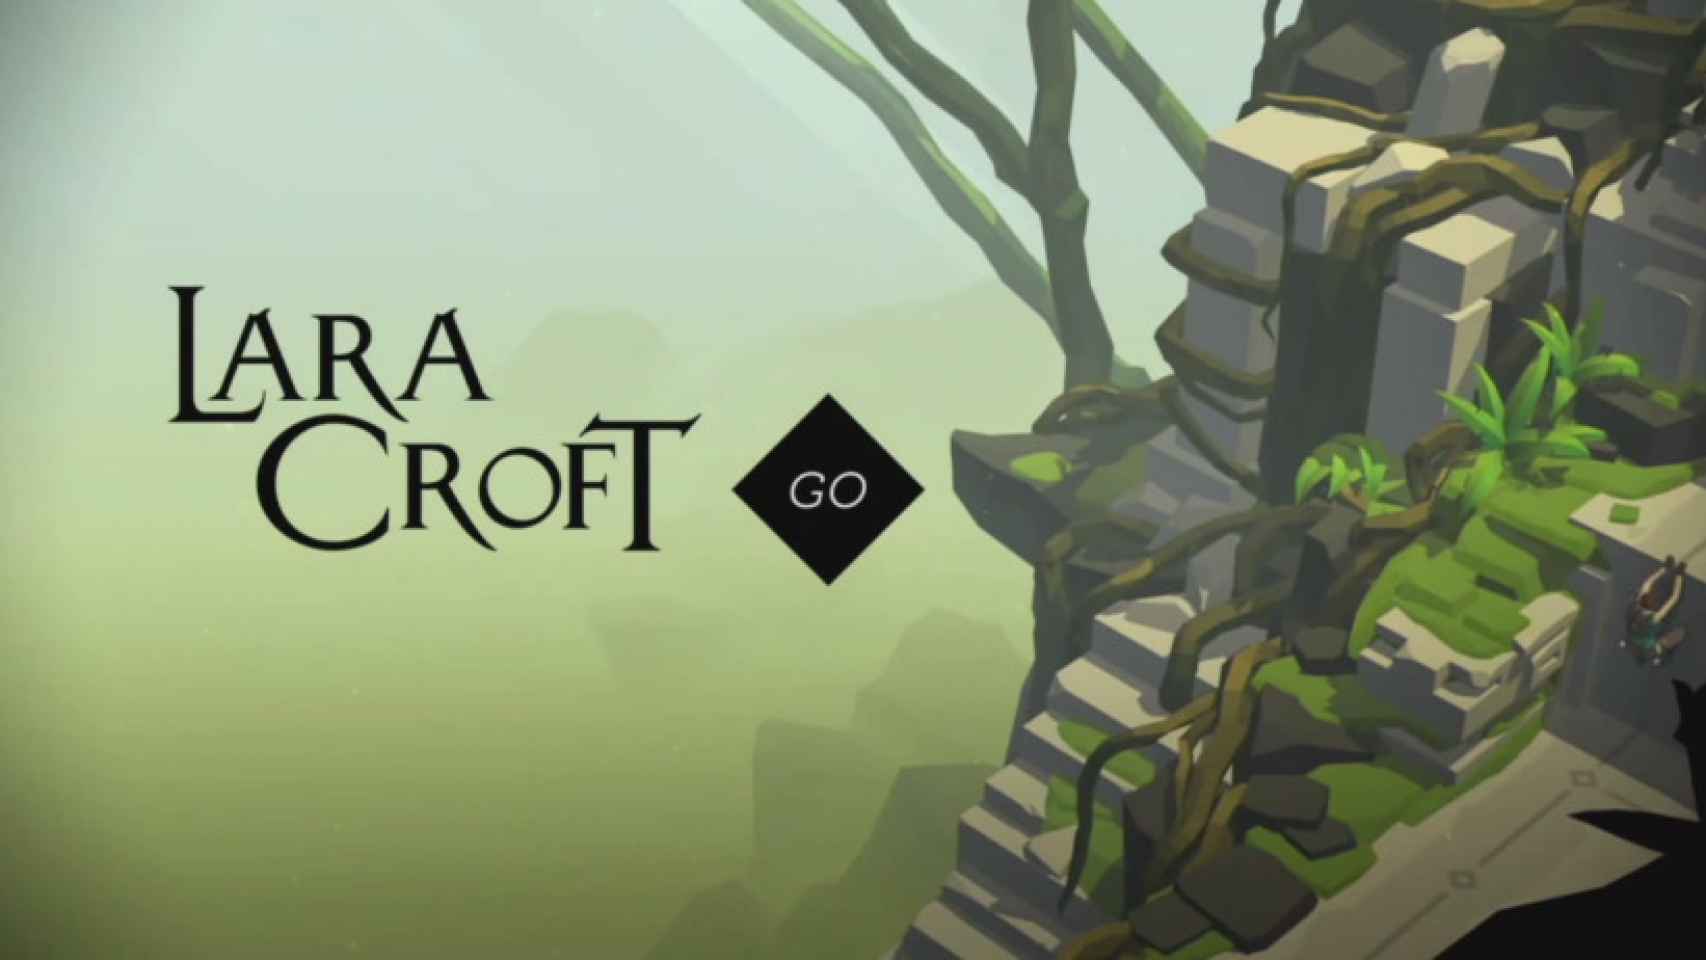 Descarga Lara Croft GO en Android gratis por tiempo limitado